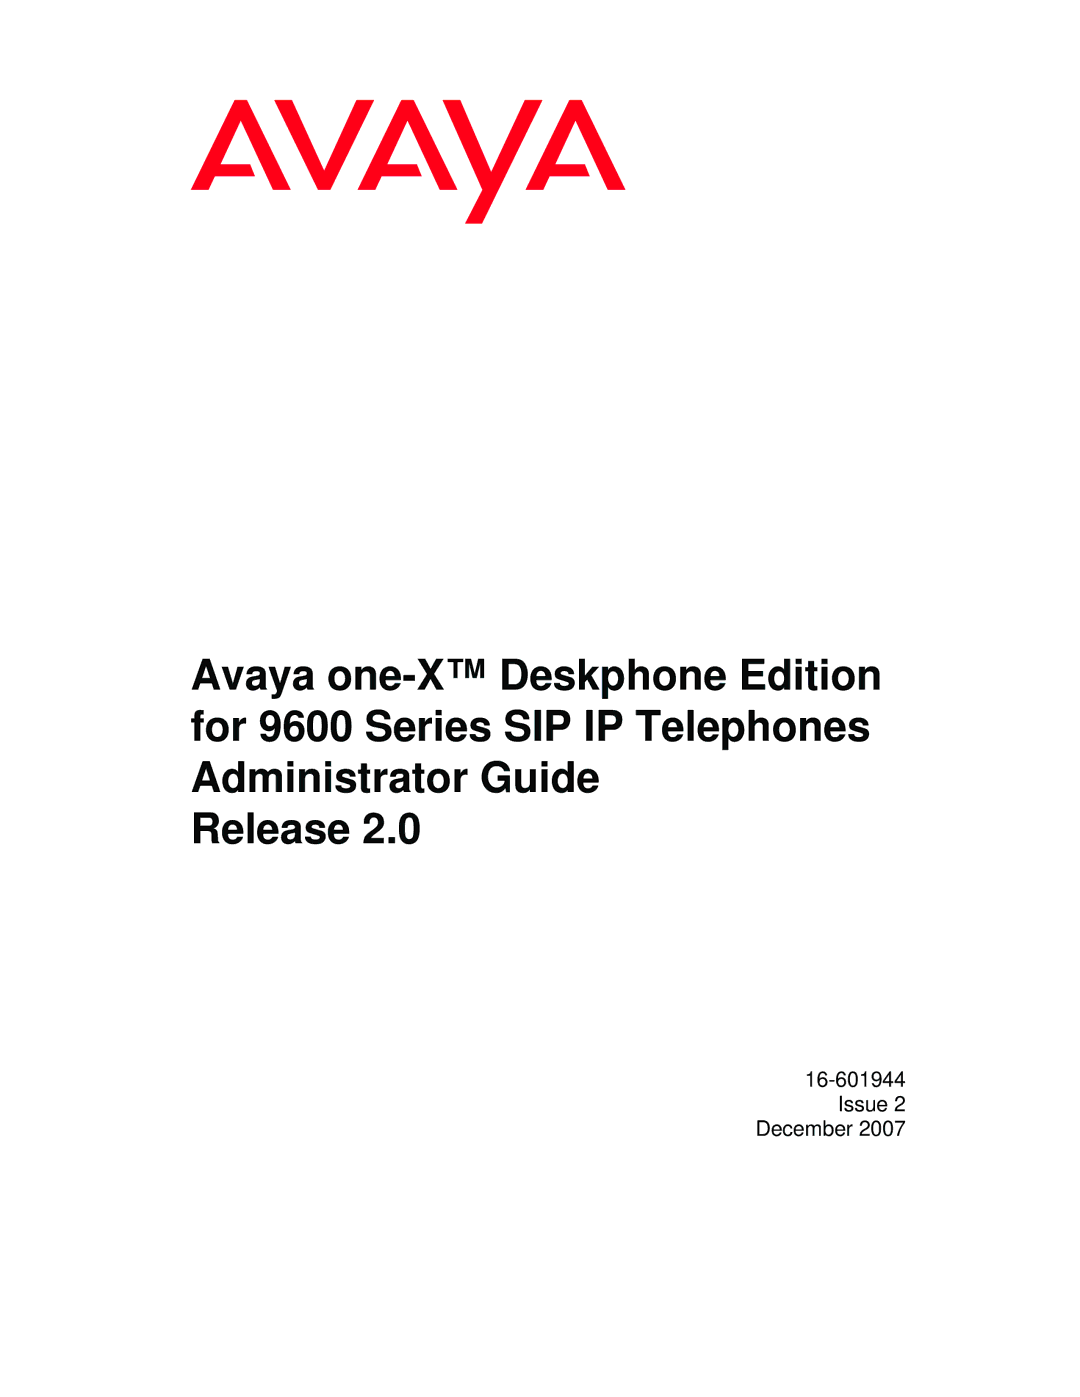 Avaya 9600 manual Issue 2 December 